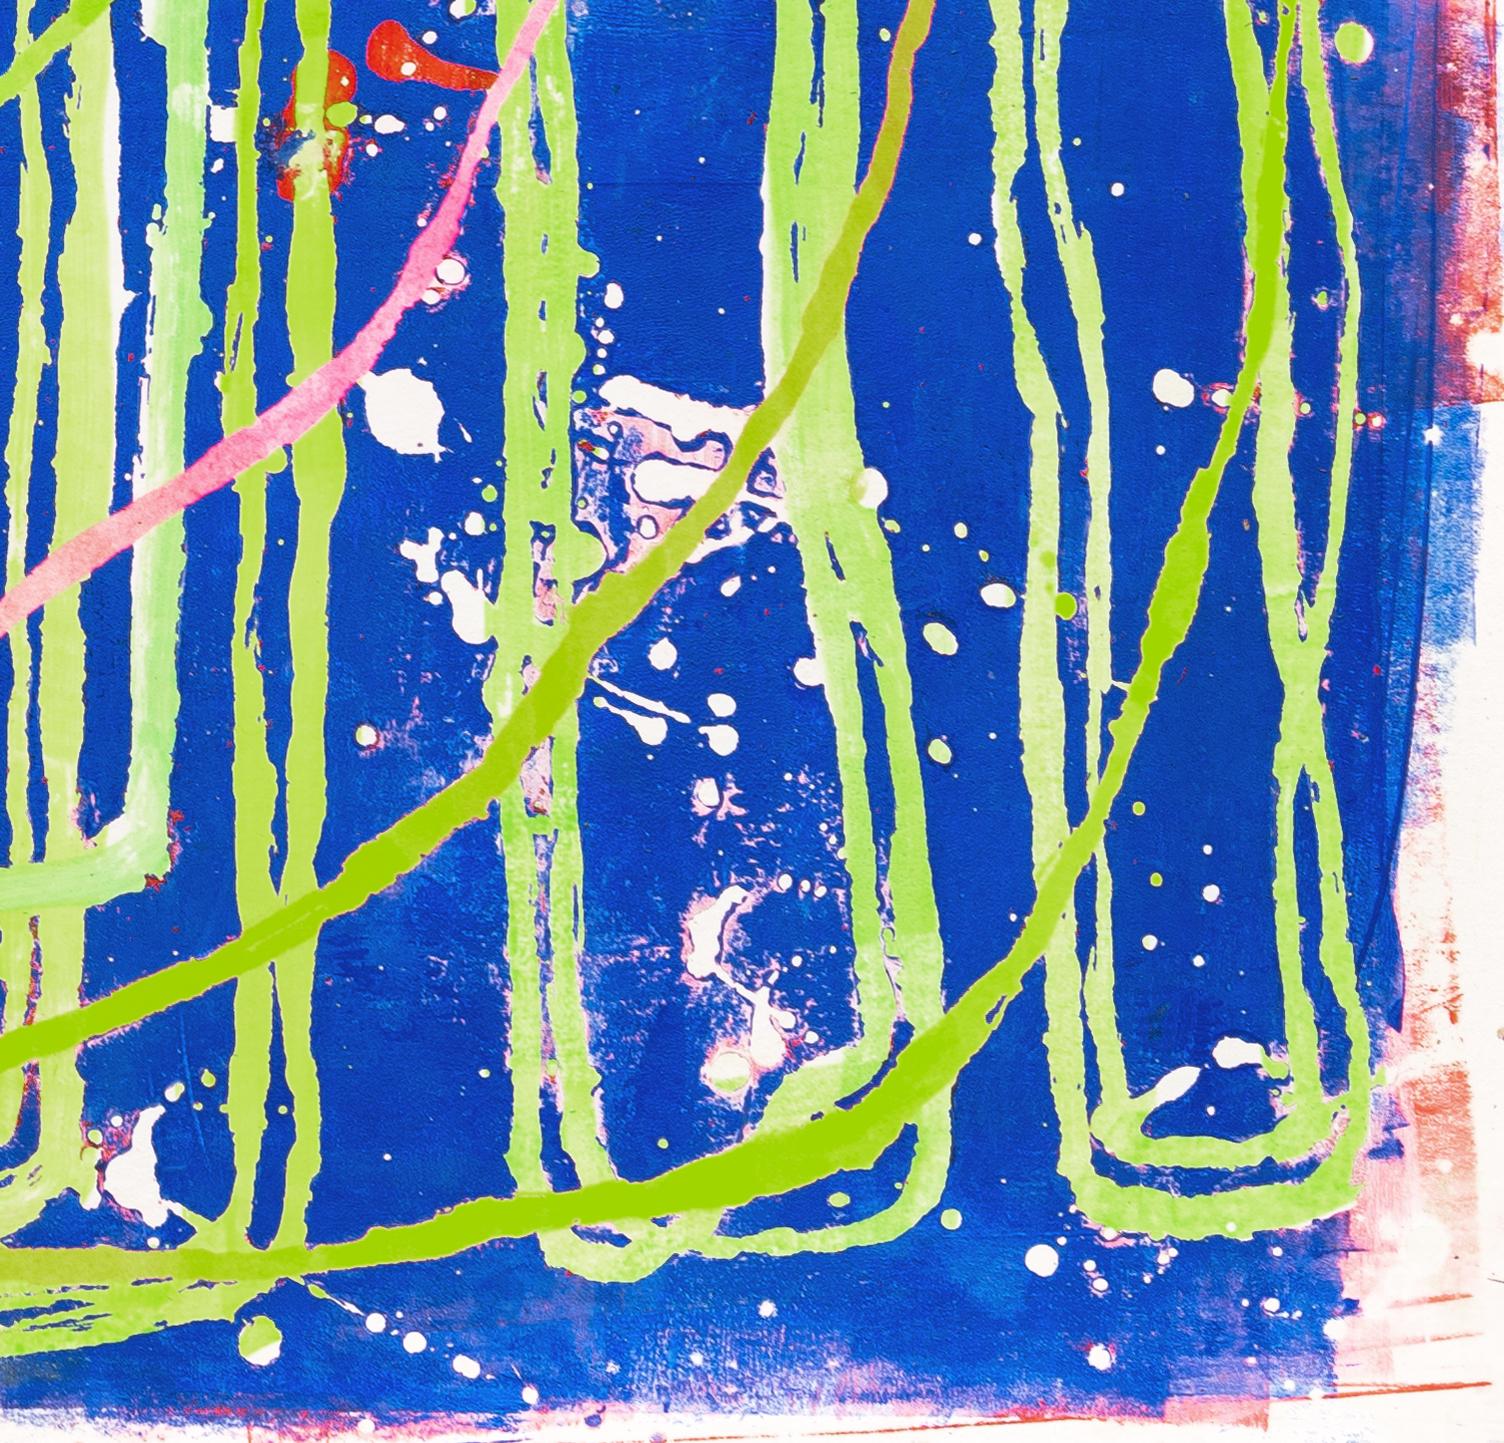 0105 : peinture gestuelle abstraite contemporaine avec des lignes vertes, rouges et roses sur bleu - Art de Paula Cahill